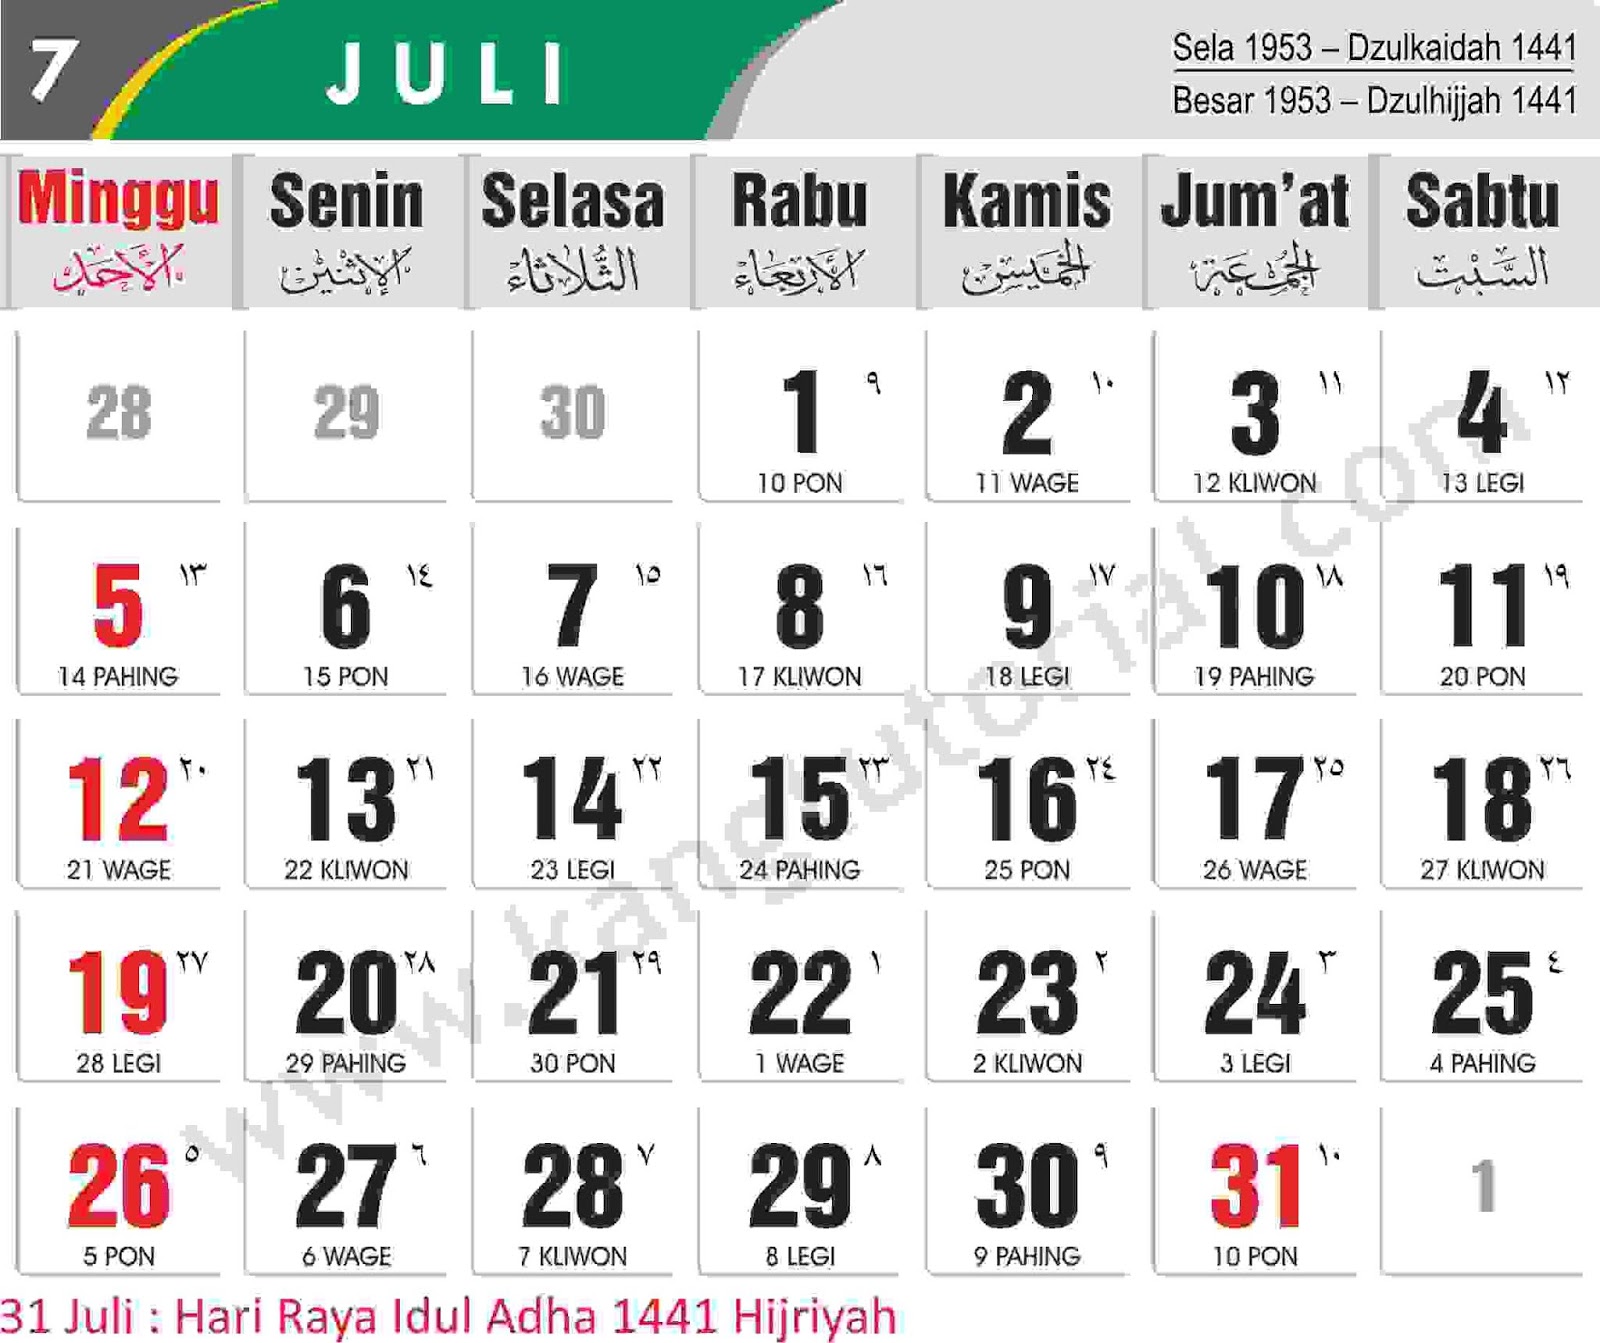 Download Kalender 2020 Gratis dan Lengkap - Kang Tutorial